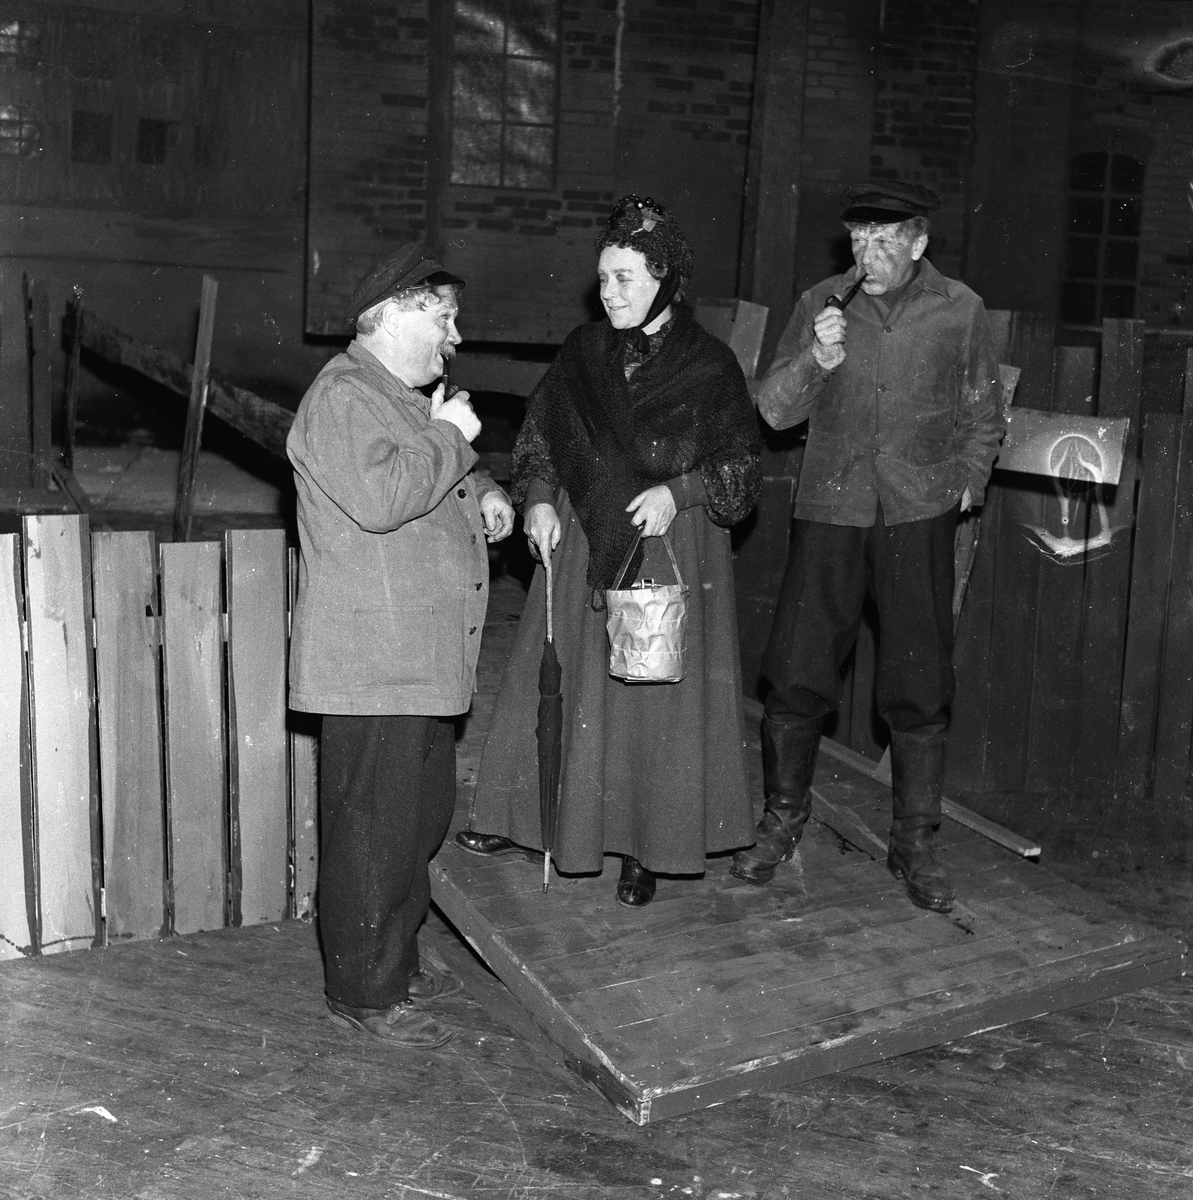 Oppsetning av "Ungen" på Folketeatert med bla. Raghild Hald, Erling Lindahl og Birger Løvaas. Fotografert 21.10.1957.